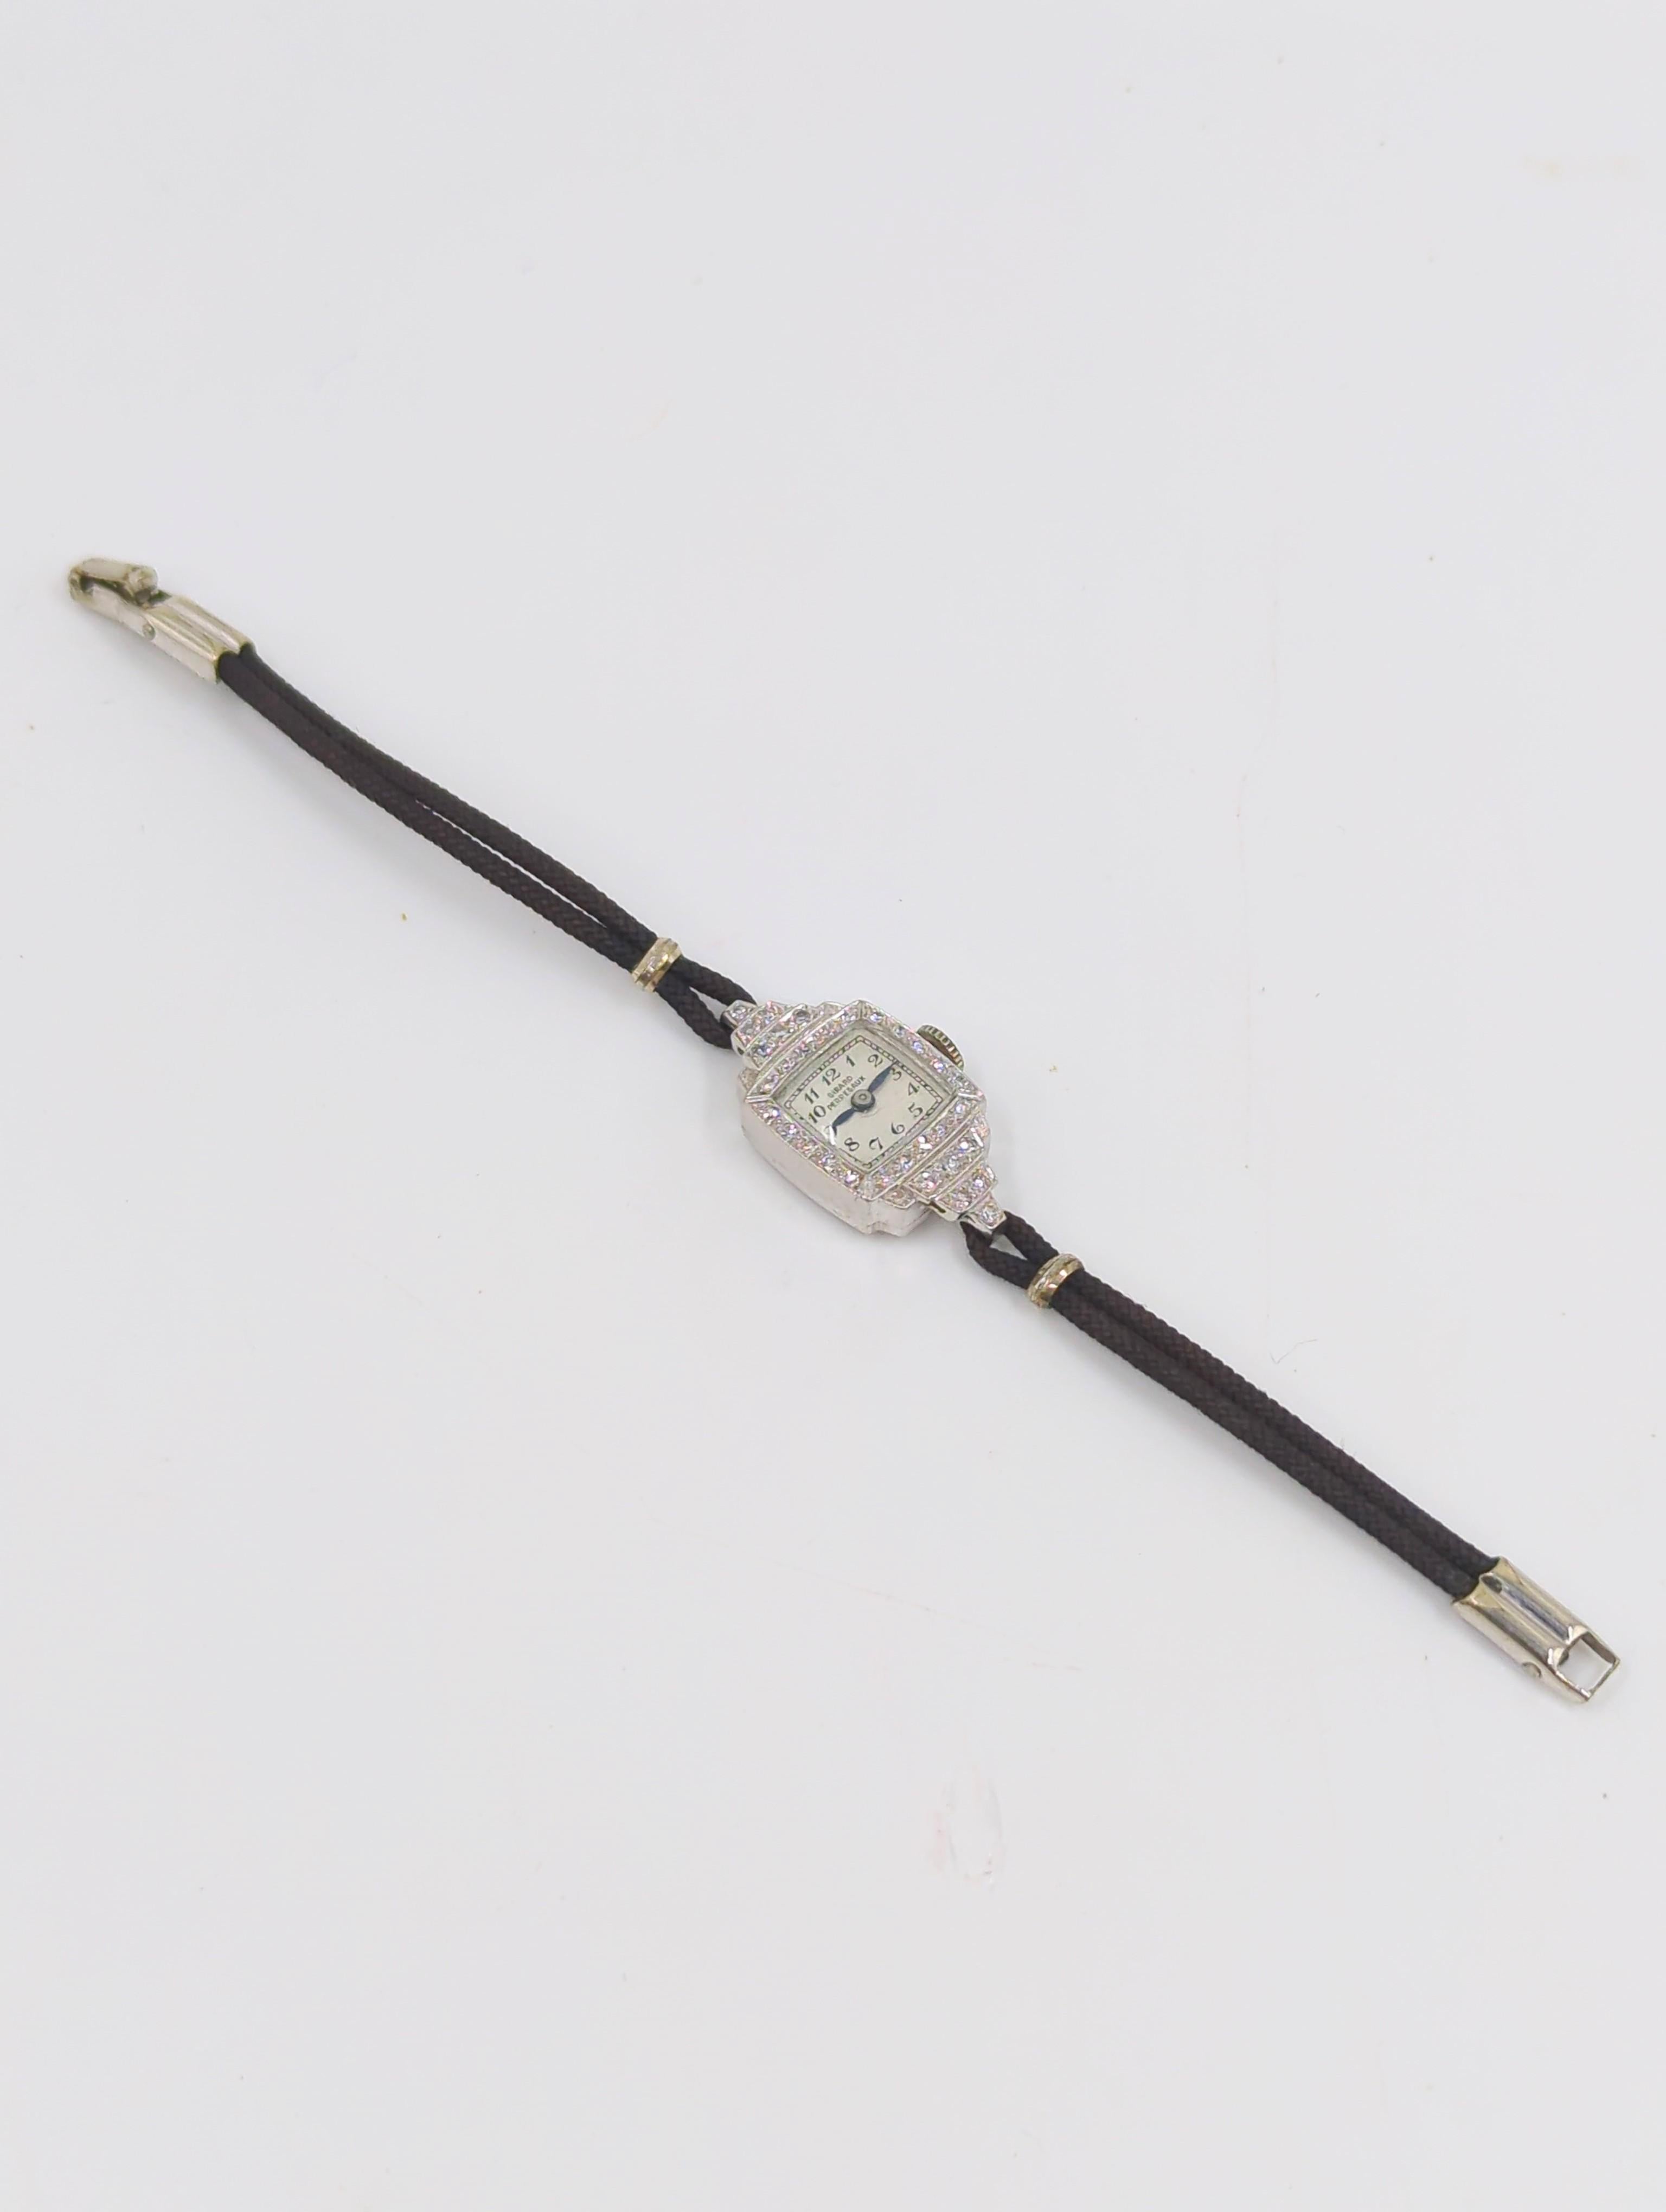 Eine seltene Vintage Girard Perregaux Damen Platin und Diamanten Uhr, zierlich und doch so voller Bling, auf Schnur Band mit Metall-Hardware, mit einer Verriegelung Sicherheitsverschluss, für kleine 5,75 